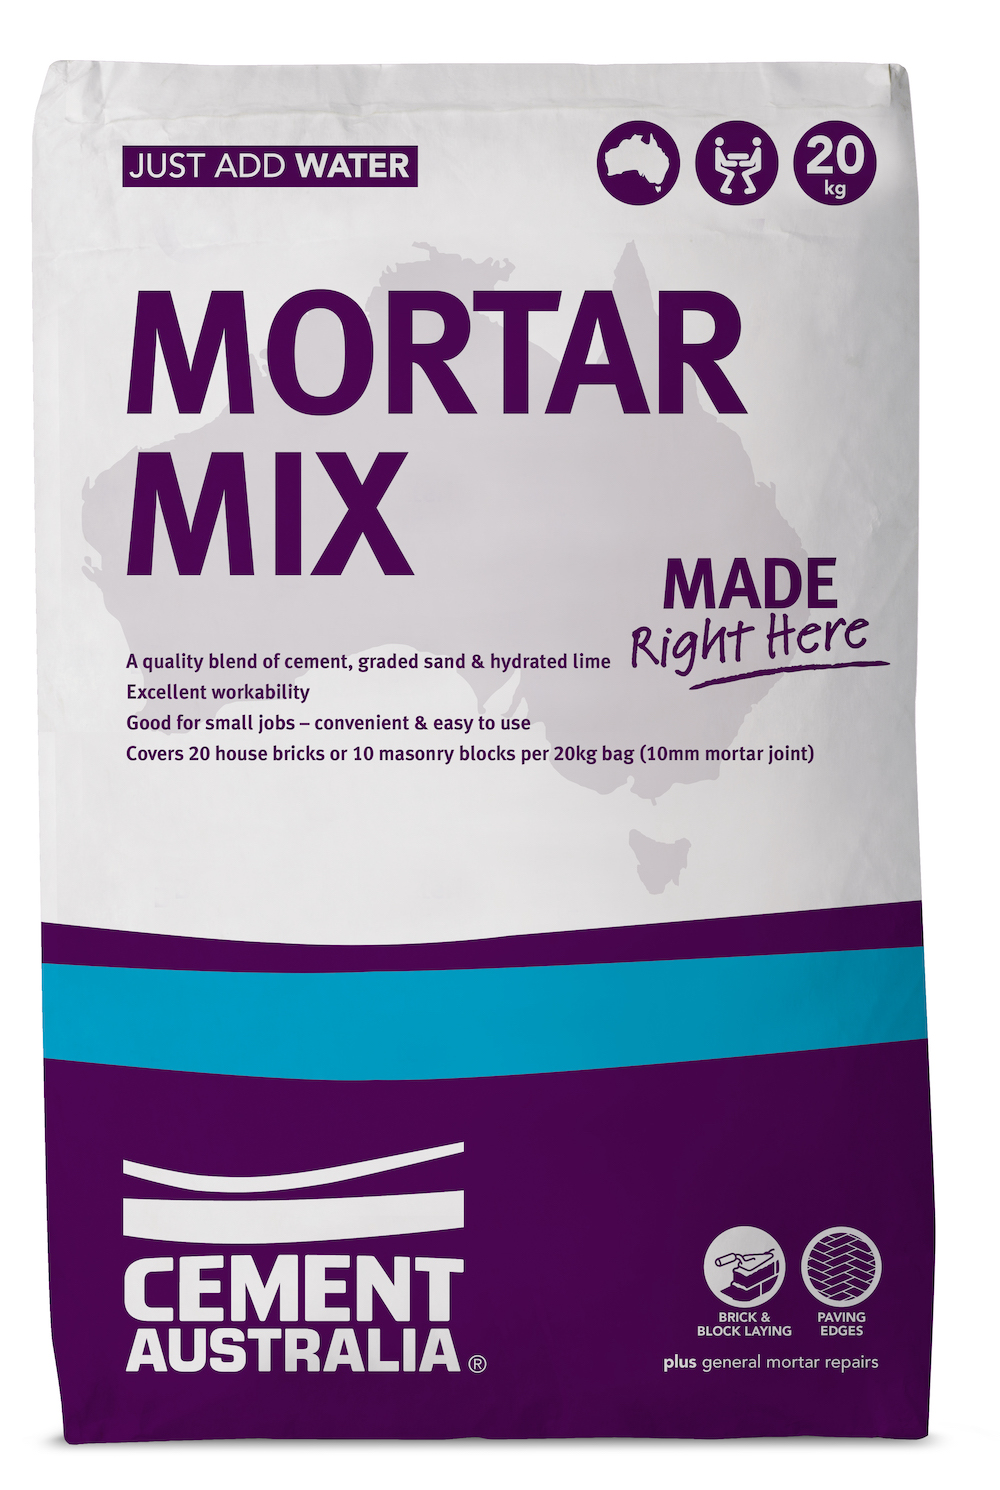 Mortar Mix $10.35 per bag